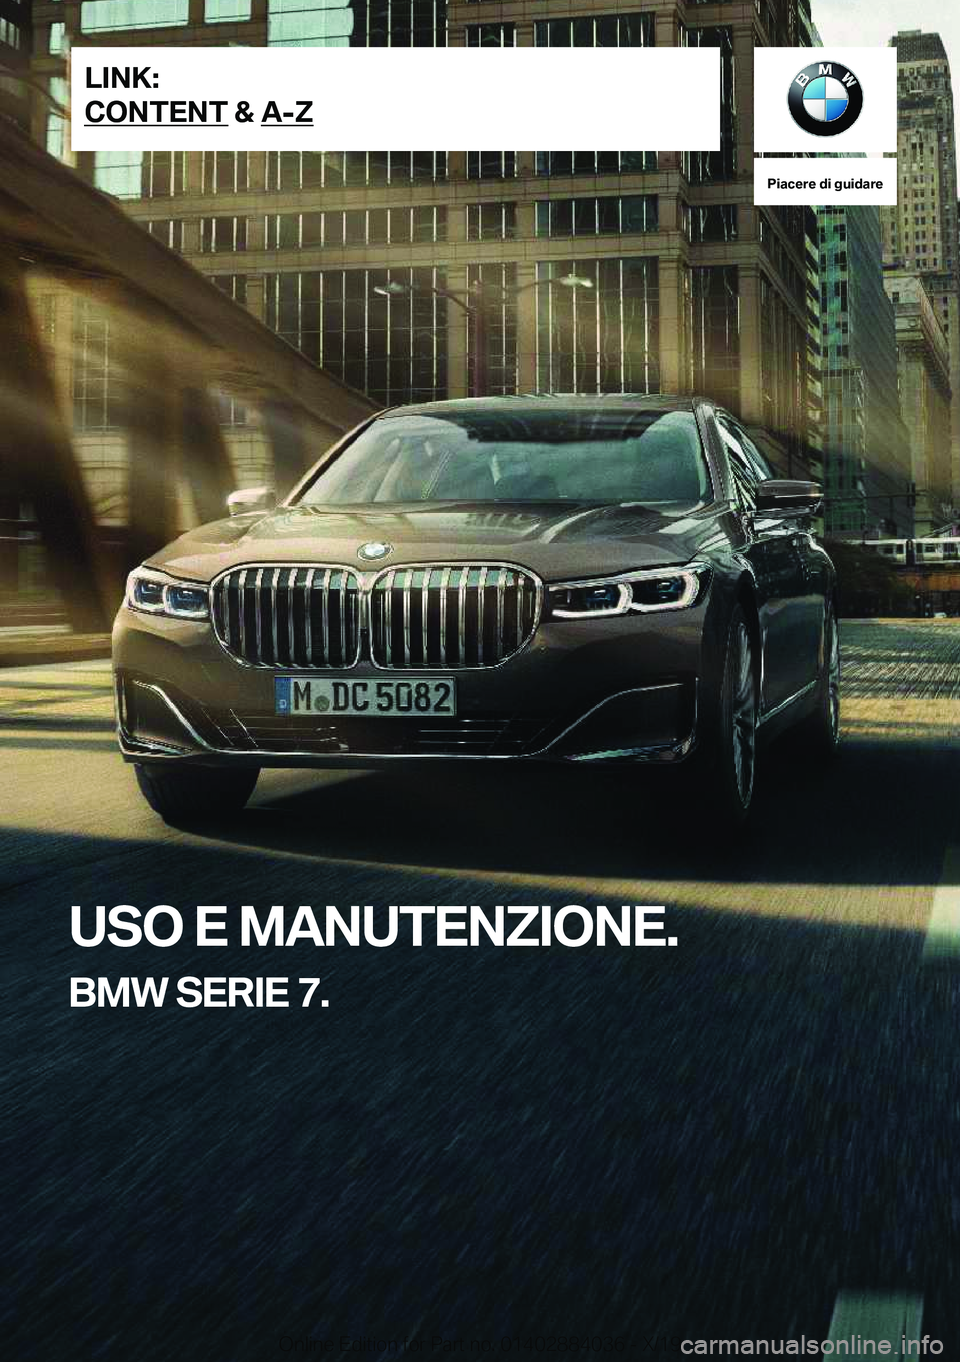 BMW 7 SERIES 2020  Libretti Di Uso E manutenzione (in Italian) �P�i�a�c�e�r�e��d�i��g�u�i�d�a�r�e
�U�S�O��E��M�A�N�U�T�E�N�Z�I�O�N�E�.
�B�M�W��S�E�R�I�E��7�.�L�I�N�K�:
�C�O�N�T�E�N�T��&��A�-�Z�O�n�l�i�n�e��E�d�i�t�i�o�n��f�o�r��P�a�r�t��n�o�.��0�1�4�